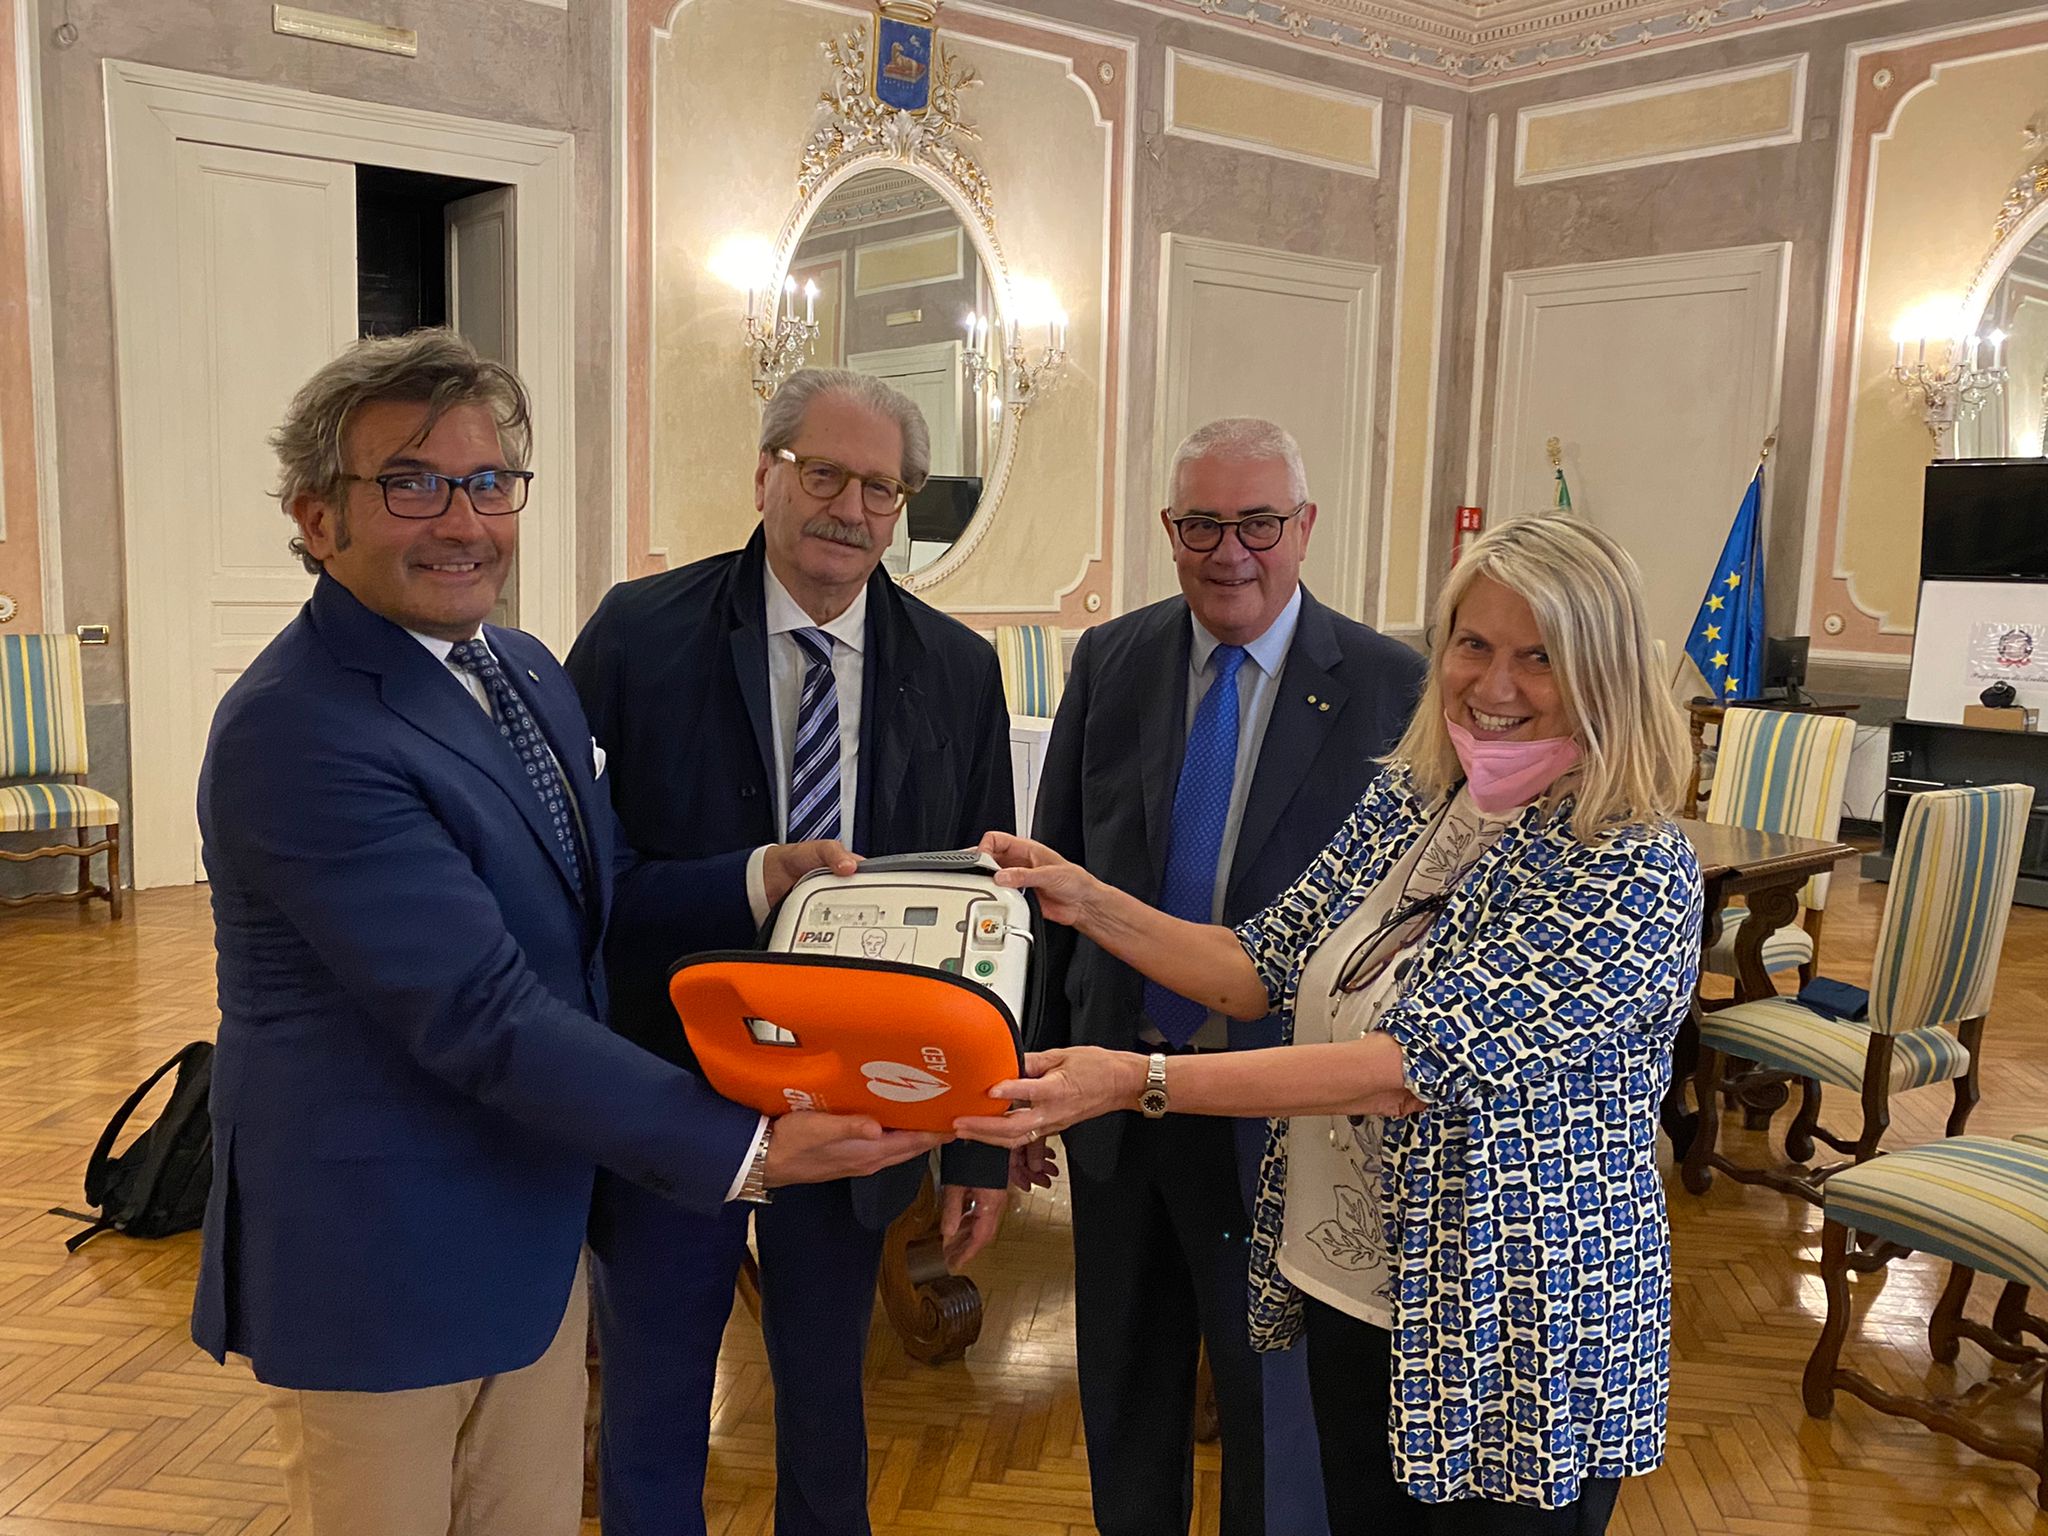 Avellino| Il Rotary Club dona un defibrillatore alla Prefettura